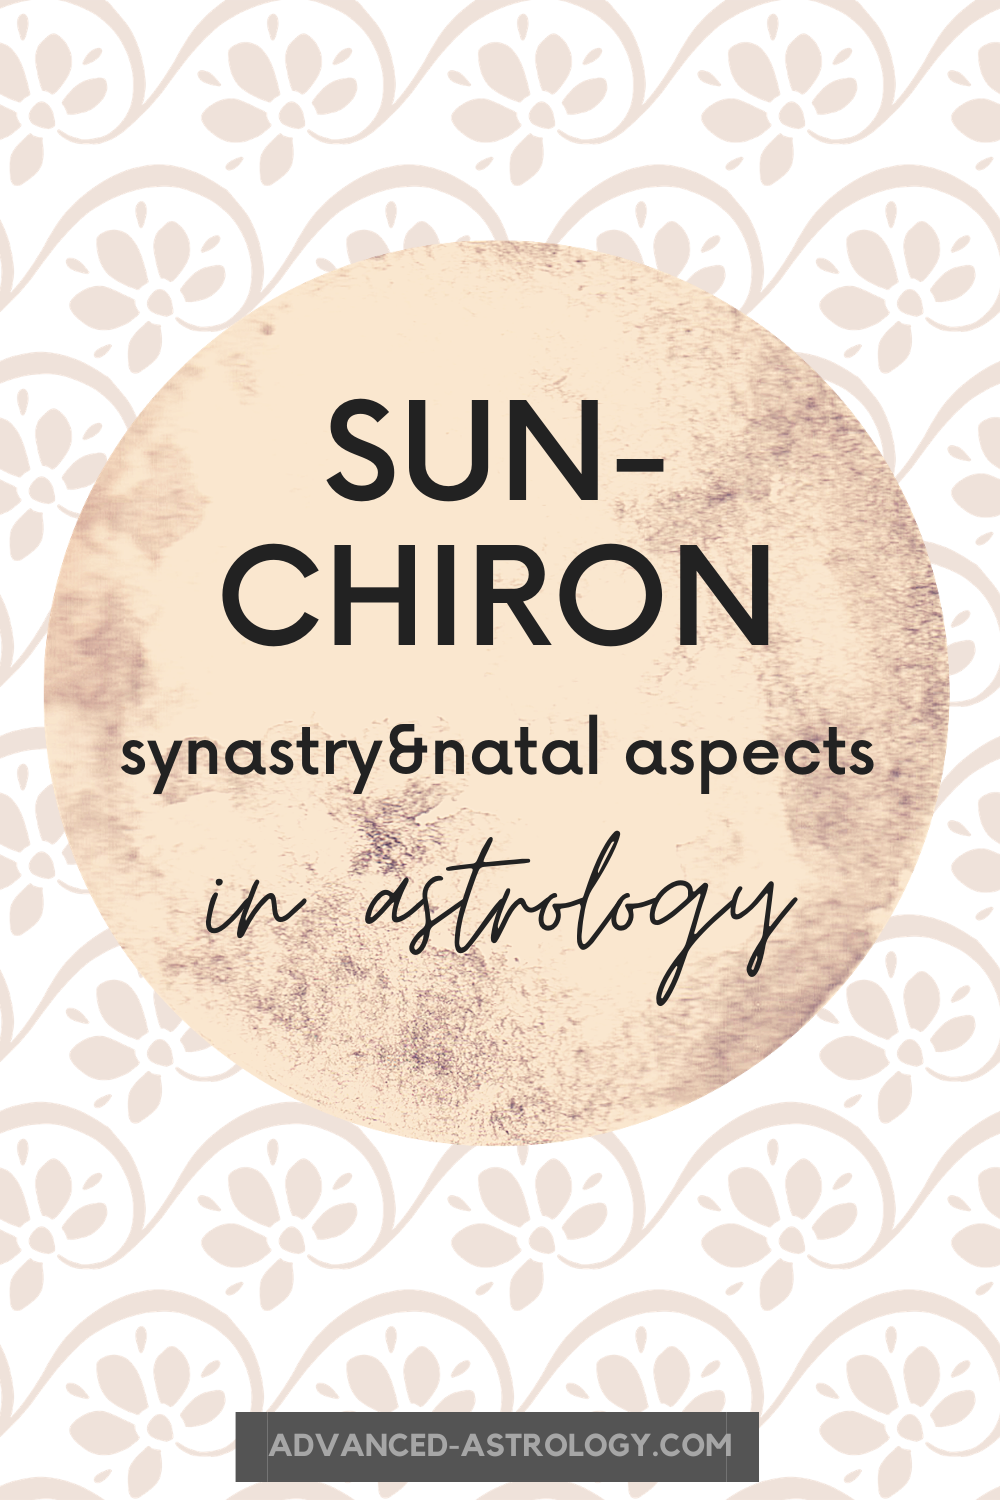  Lidhja e Diellit Chiron: Kuptimi i Sinastrisë, Natalit dhe Tranzitit